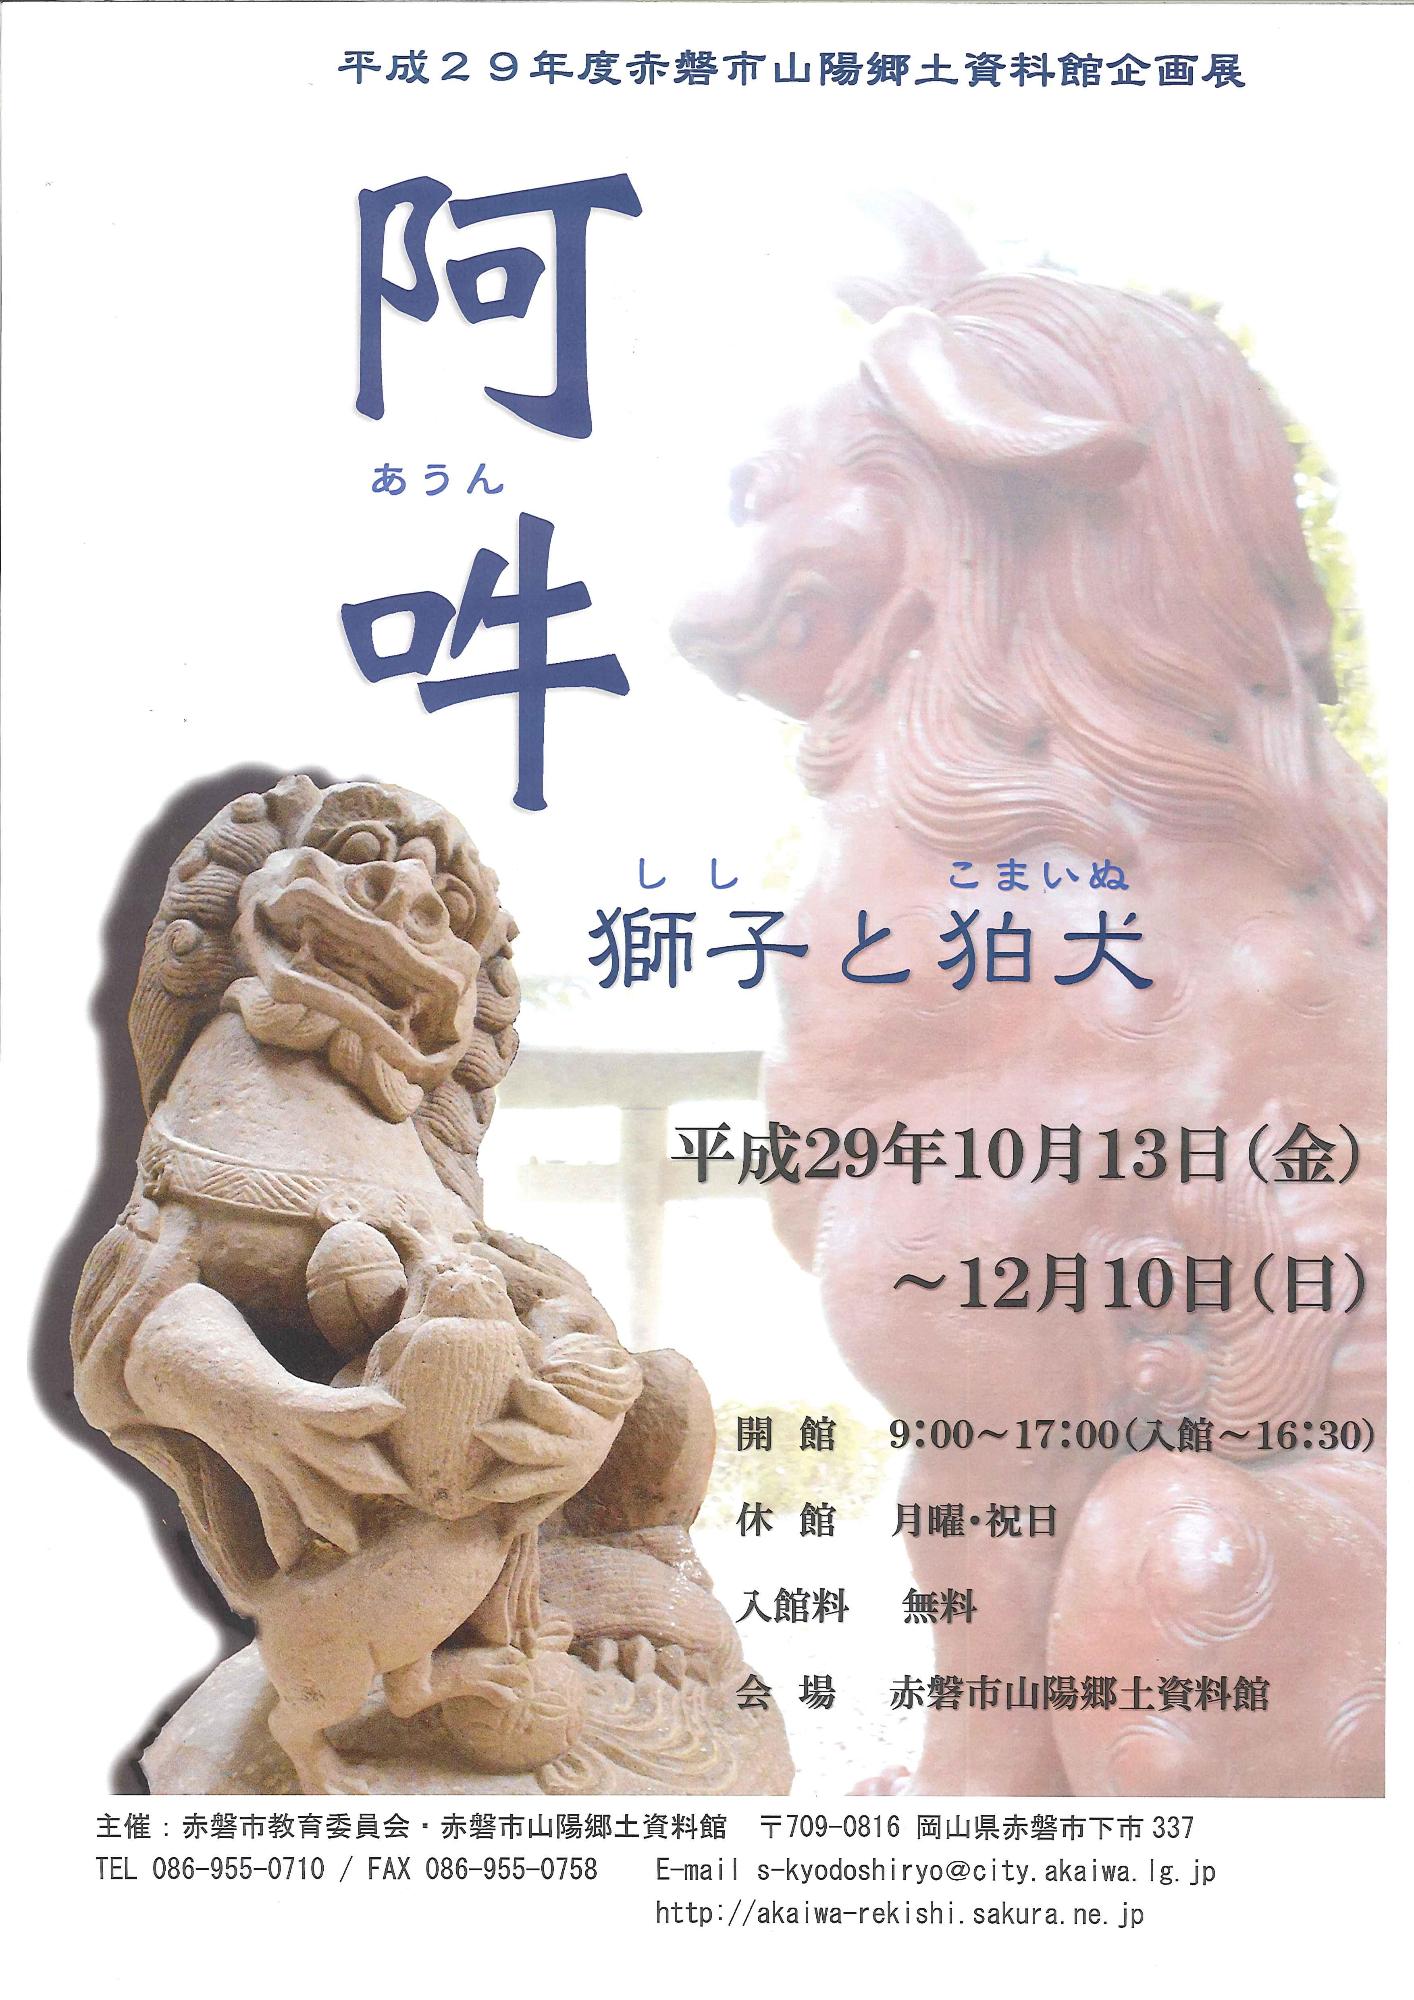 企画展「阿吽 ー獅子と狛犬ー」のチラシ表面の写真